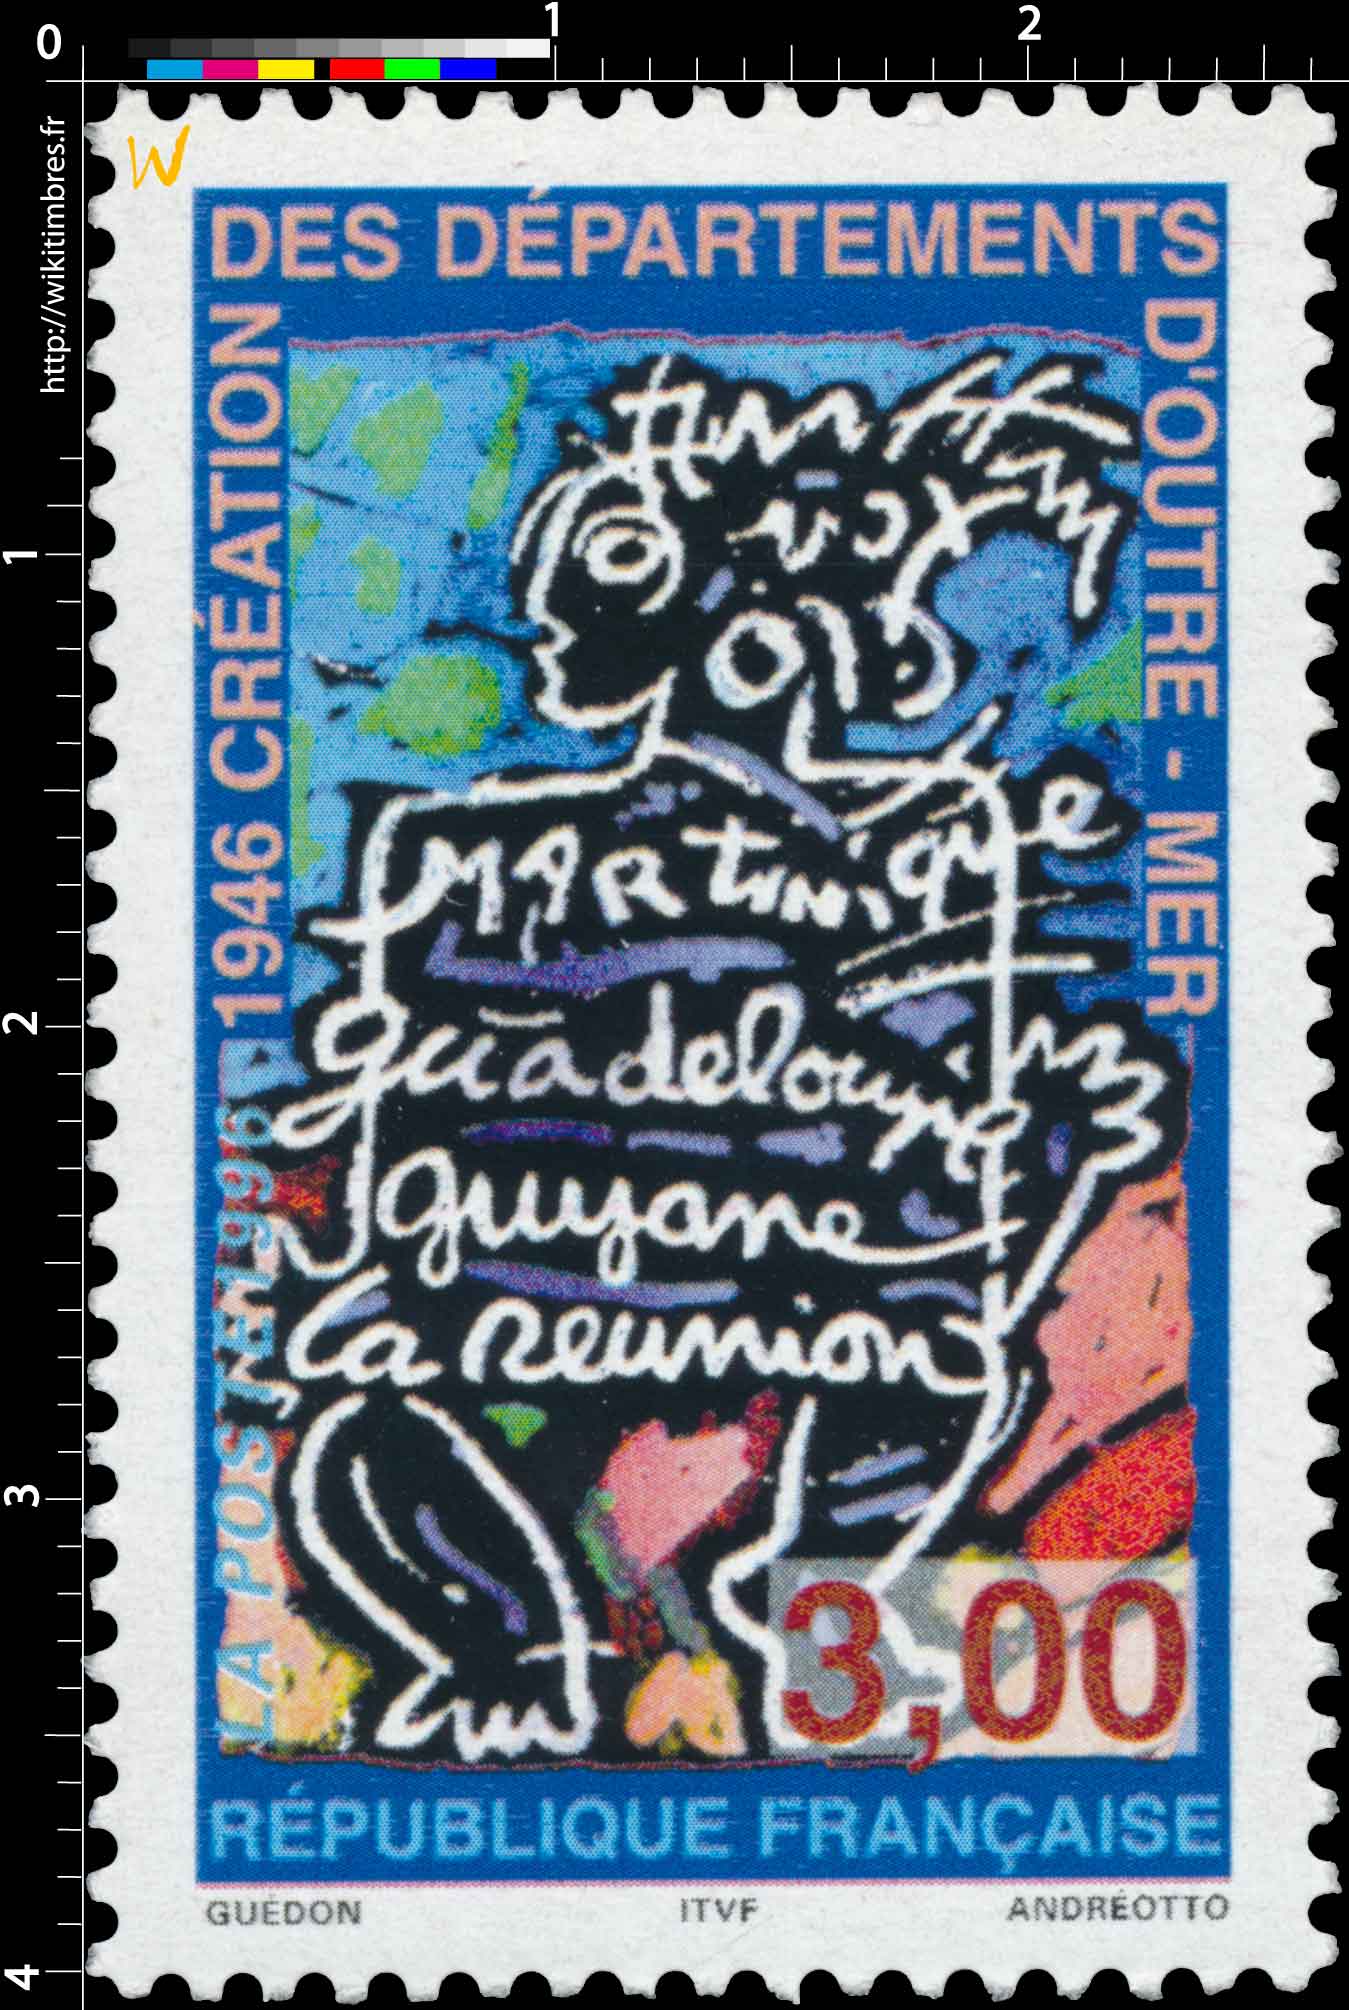 1996 1946 CRÉATION DES DÉPARTEMENTS D'OUTRE-MER Martinique Guadeloupe Guyane la réunion